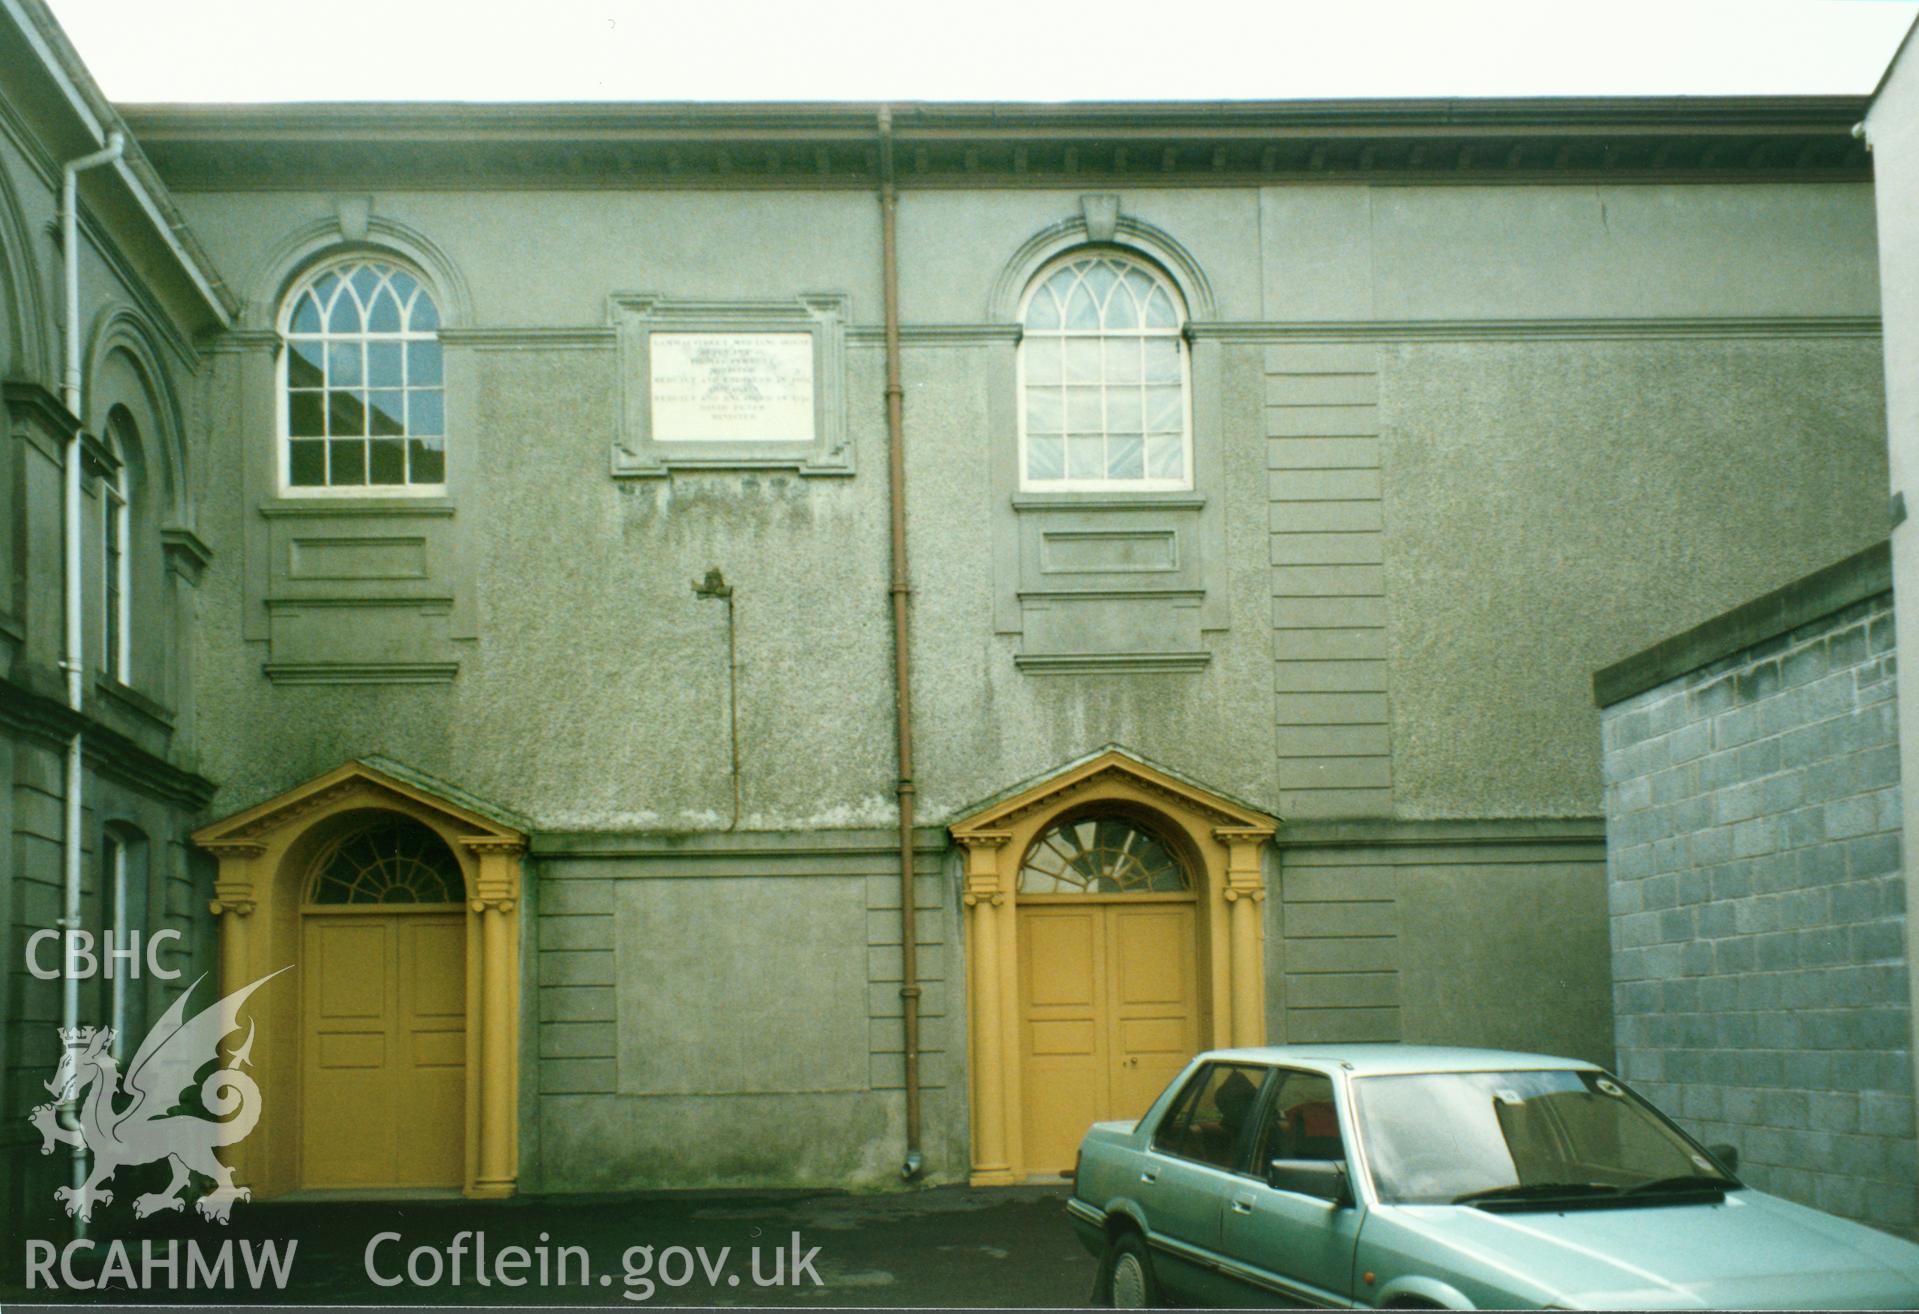 Digital copy of a colour photograph showing an exterior view of Heol Awst Welsh Independent Chapel, Lammas Street, Carmarthen, taken by Robert Scourfield, 1996.